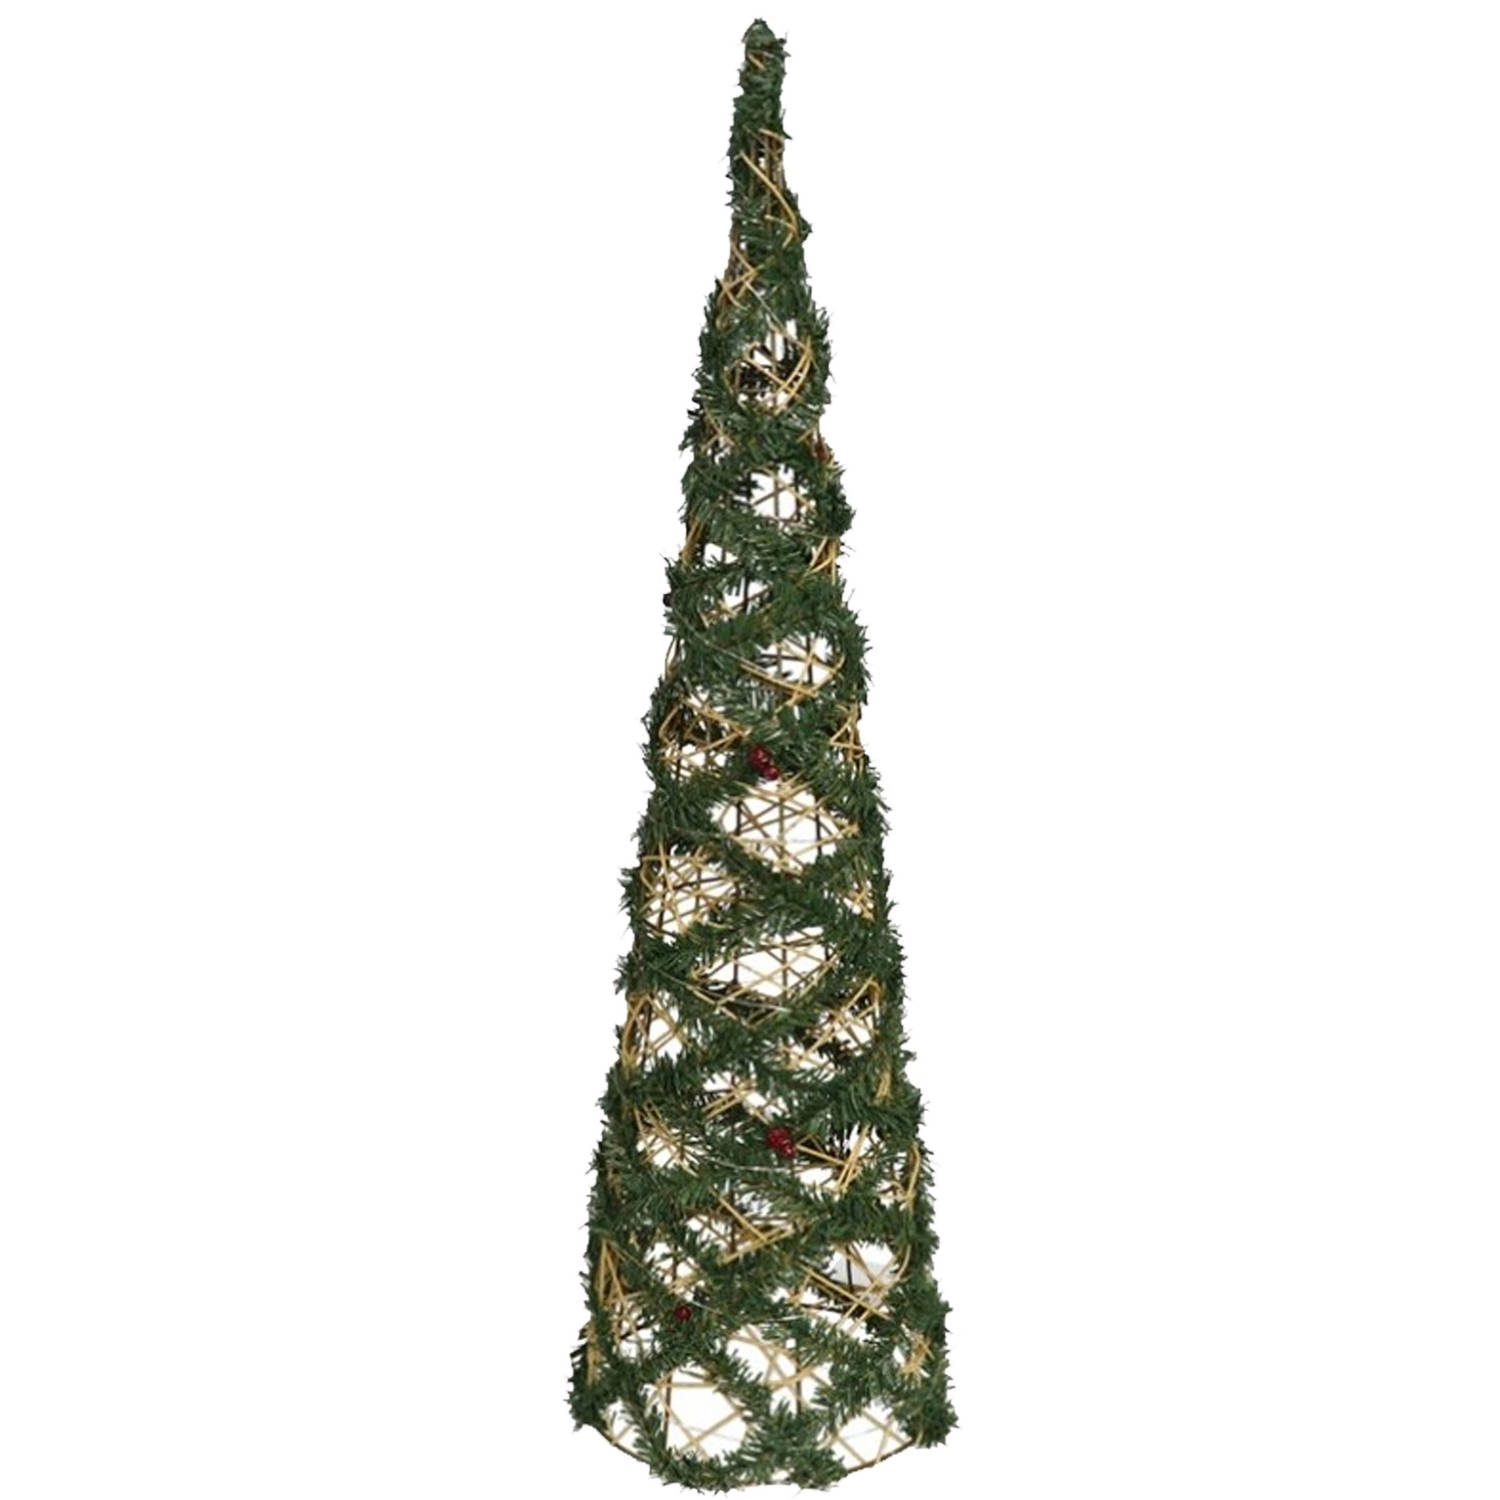 Gerimport Kerstverlichting kegel - 60 LEDs - groen - 78 cm - warm wit - kerstverlichting figuur